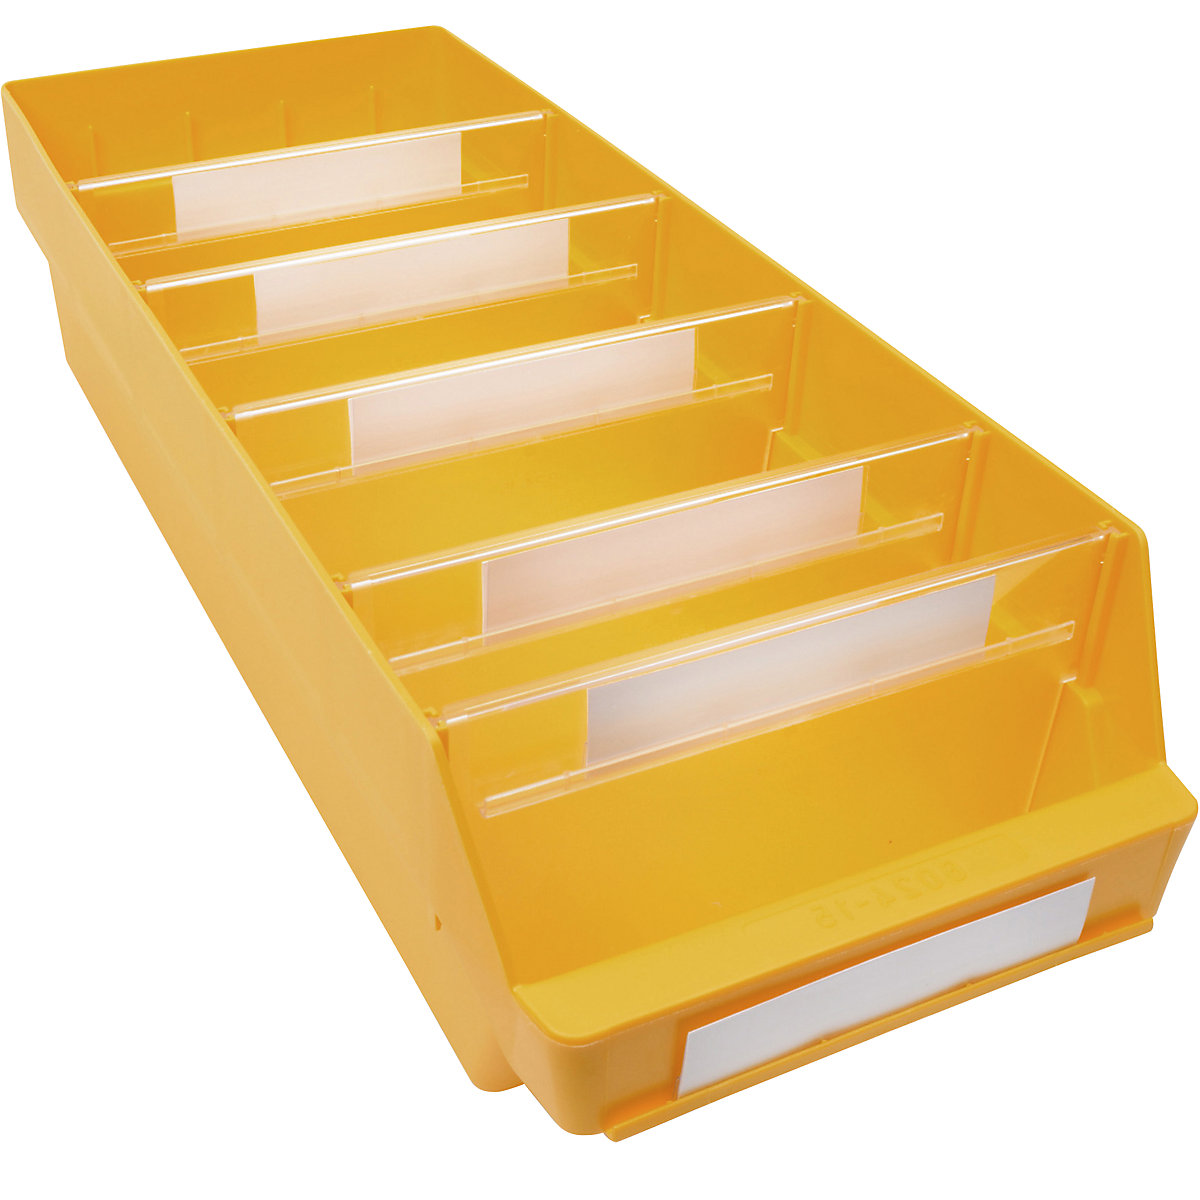 Bac de stockage en polypropylène résistant aux chocs – STEMO, coloris jaune, L x l x h 600 x 240 x 150 mm, lot de 10-15